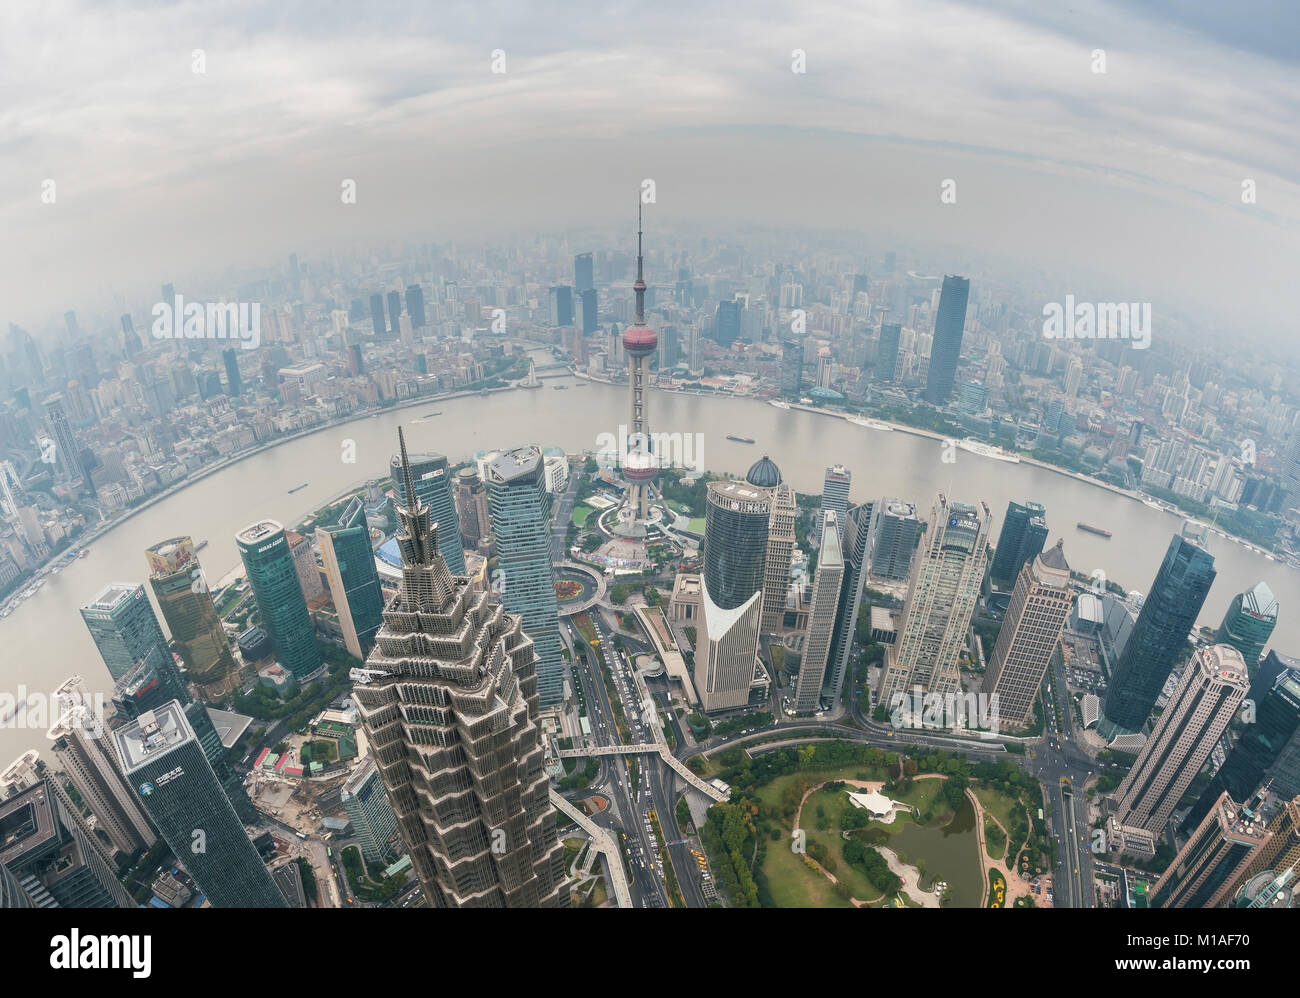 Shanghai in daytime, fisheye view Stock Photo